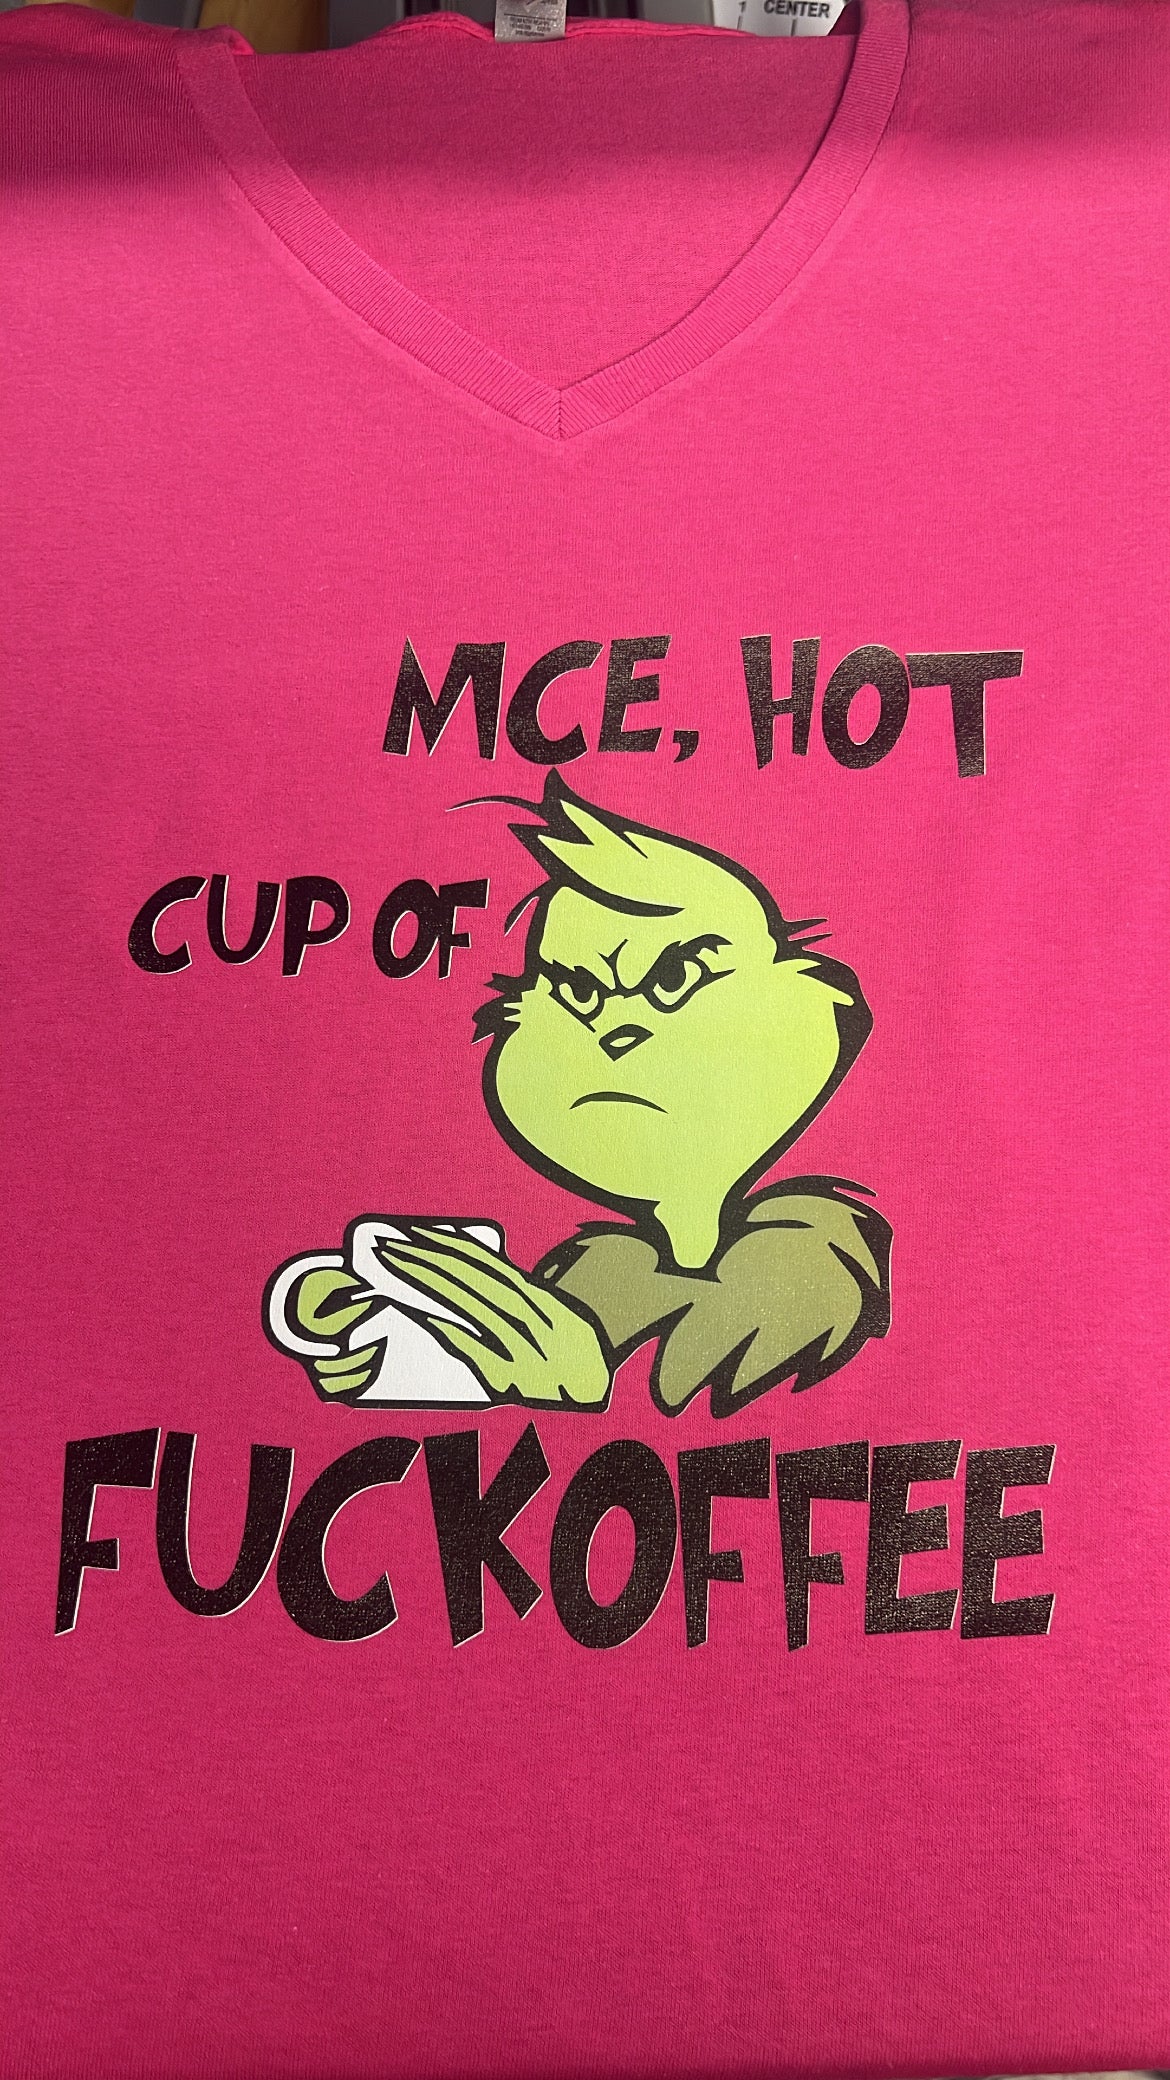 Nice, Hot Cup of F***kofee